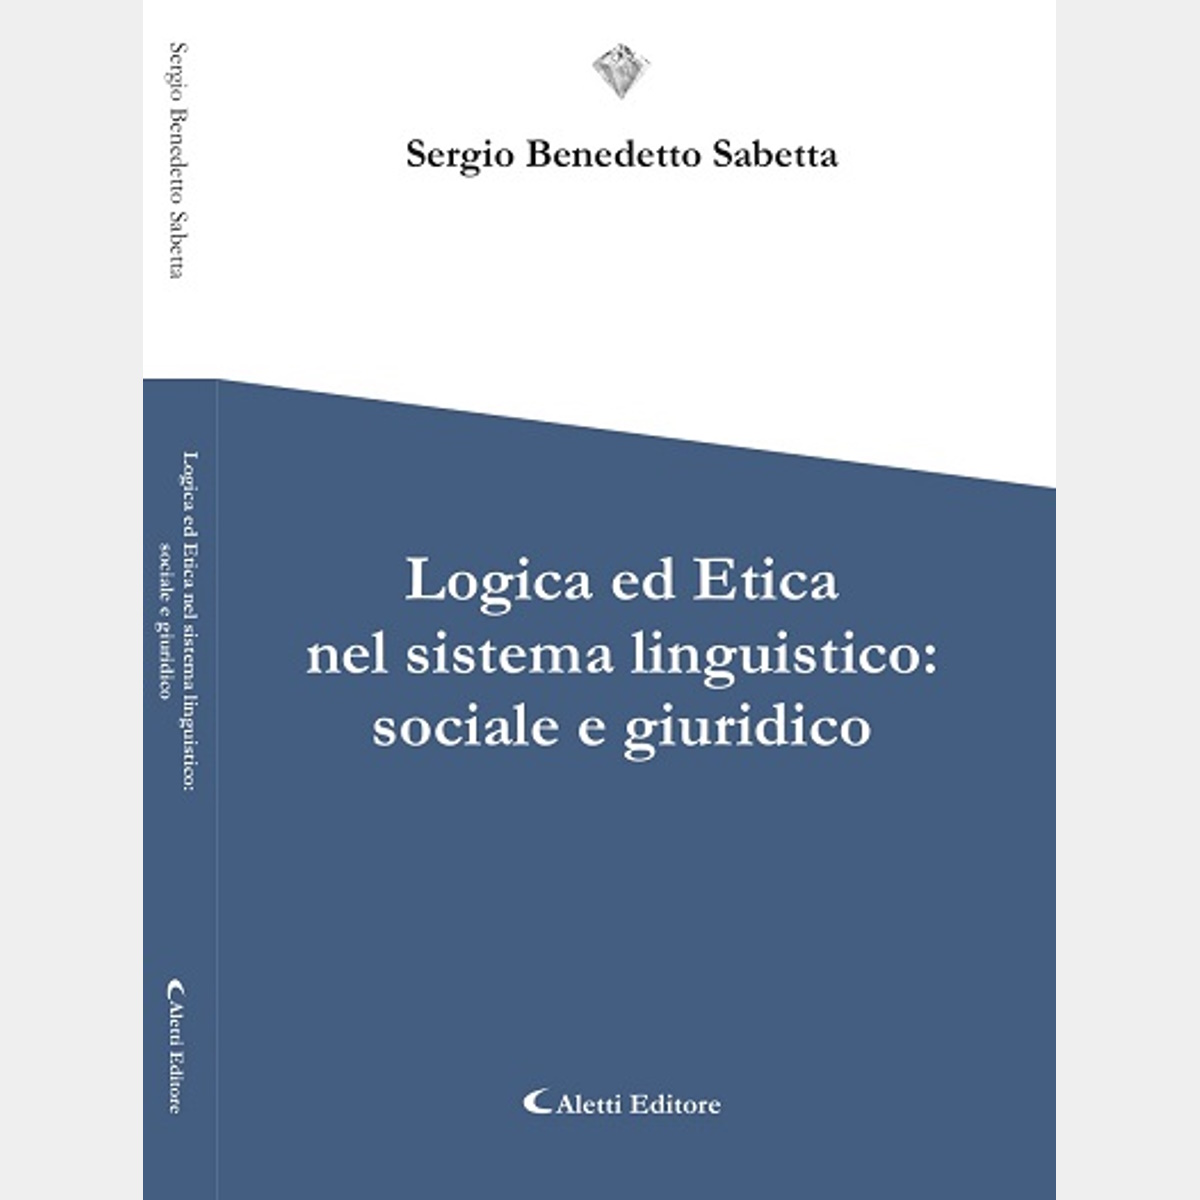 “Logica ed etica nel sistema linguistico: sociale e giuridico”. Una dittatura economica che frena la crescita individuale e collettiva